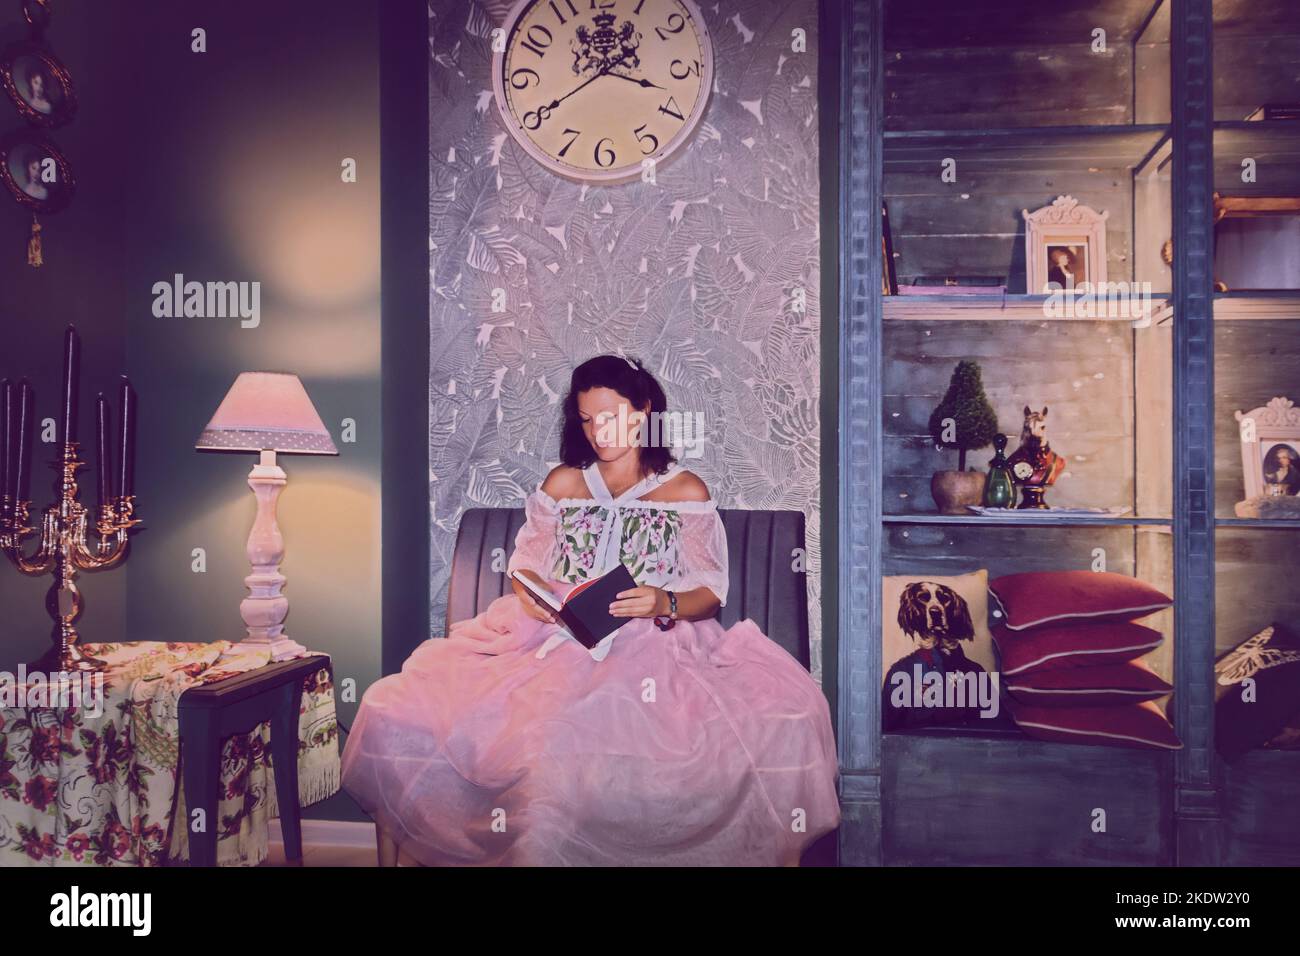 Une fille dans une robe rose à l'ancienne est en train de lire un livre., art numérique intérieur Vintage. Style rétro. Banque D'Images